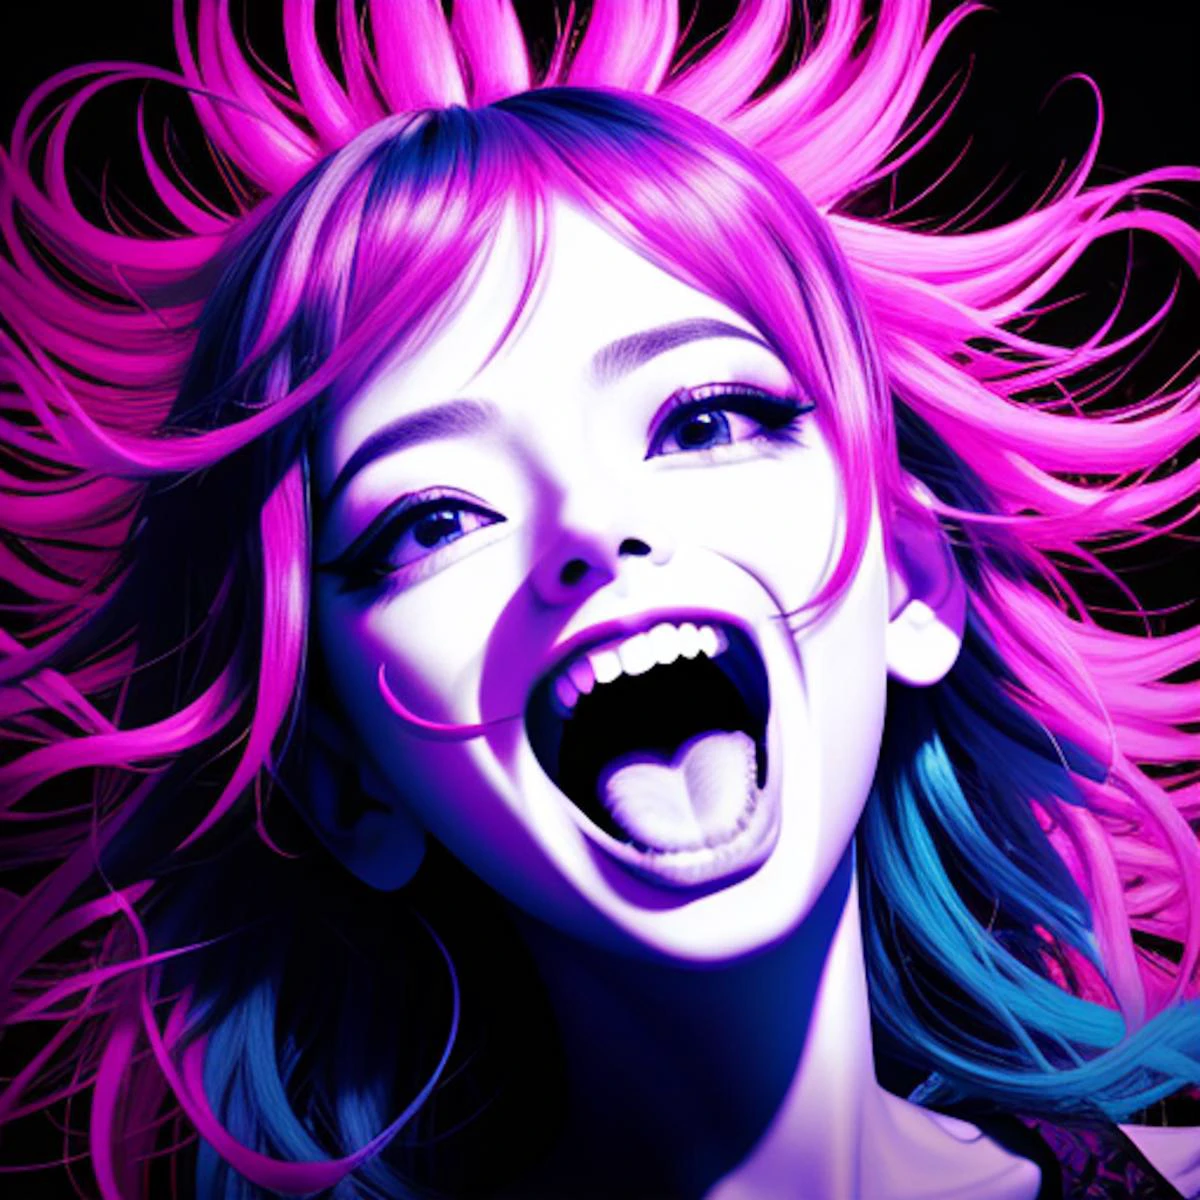 mujer hermosa, Cabello fractal, riendo como un maníaco con la boca bien abierta, silueta de contorno de tinta colorida, (contacto visual:1.3), (mirada intensa:1.1), Realista, alta resolución